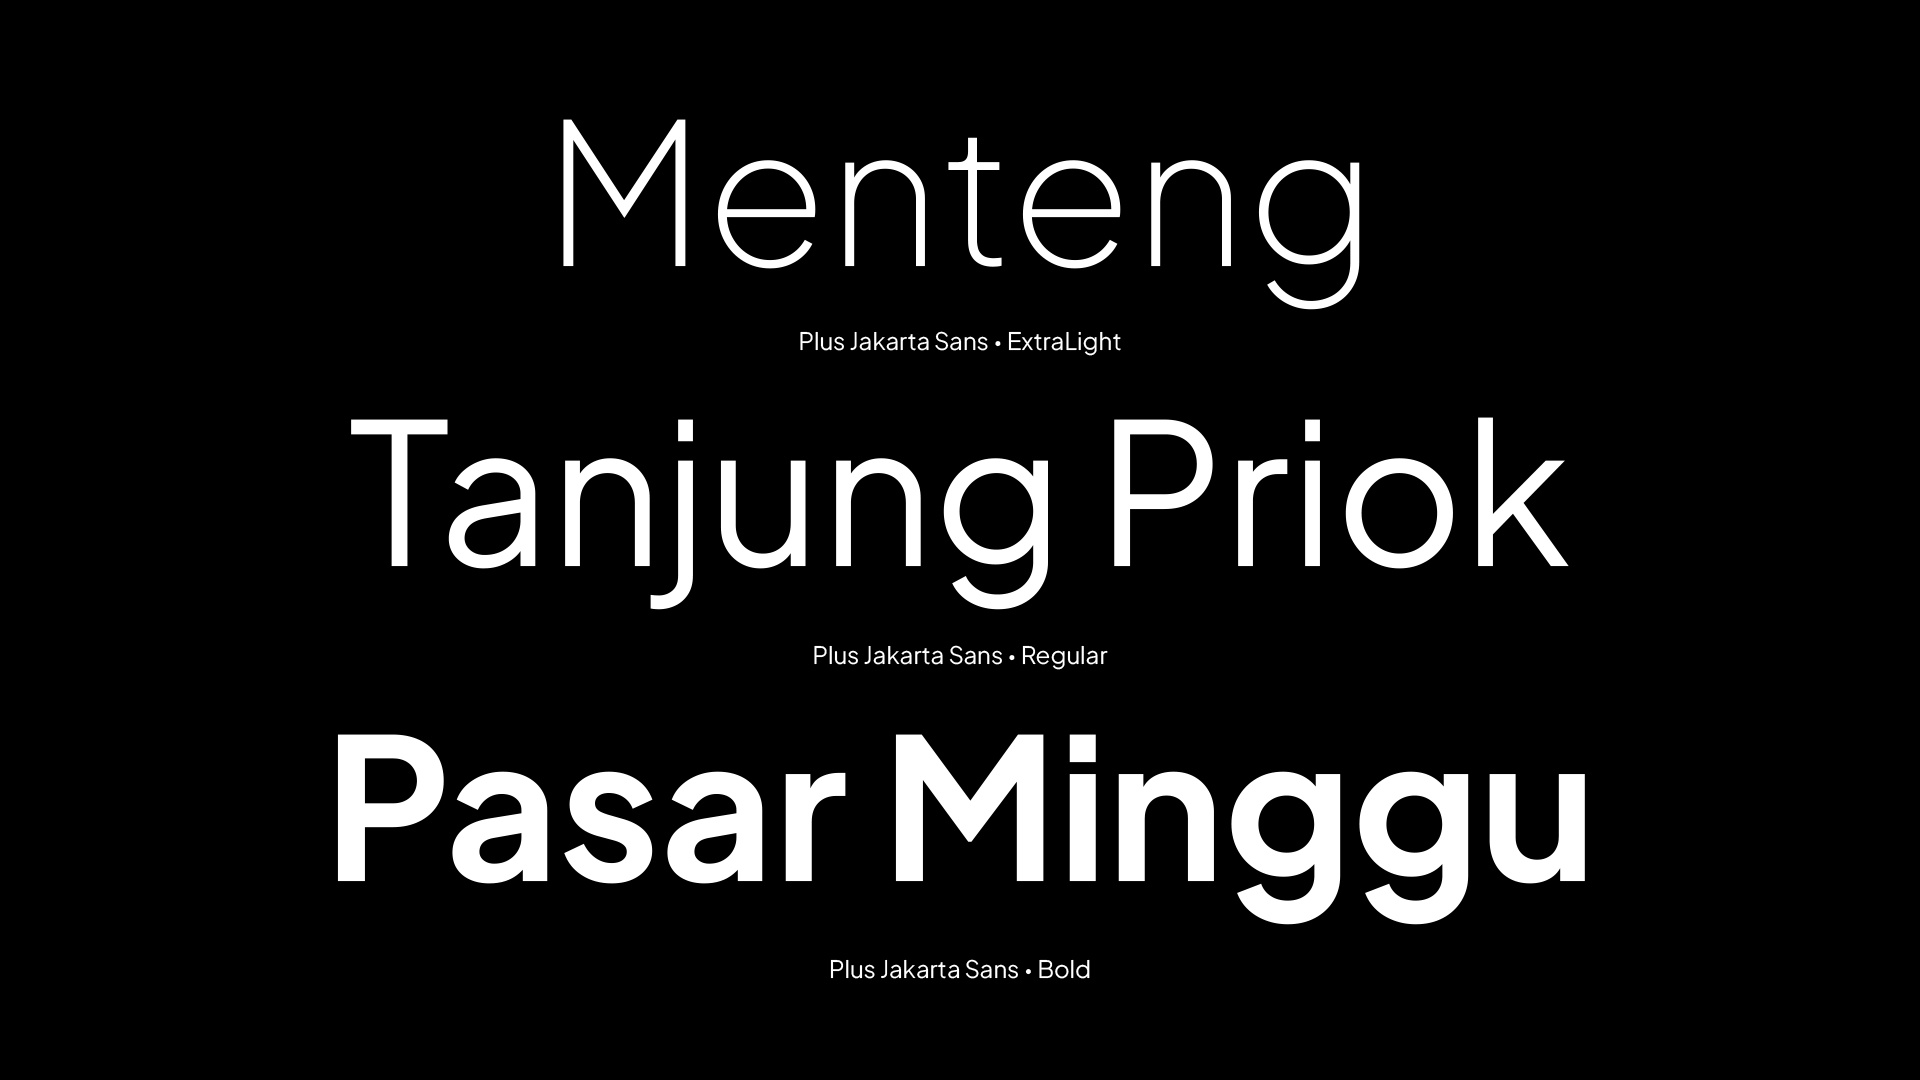 TIL Kota Jakarta punya font khusus untuk brandingnya namanya Plus ...